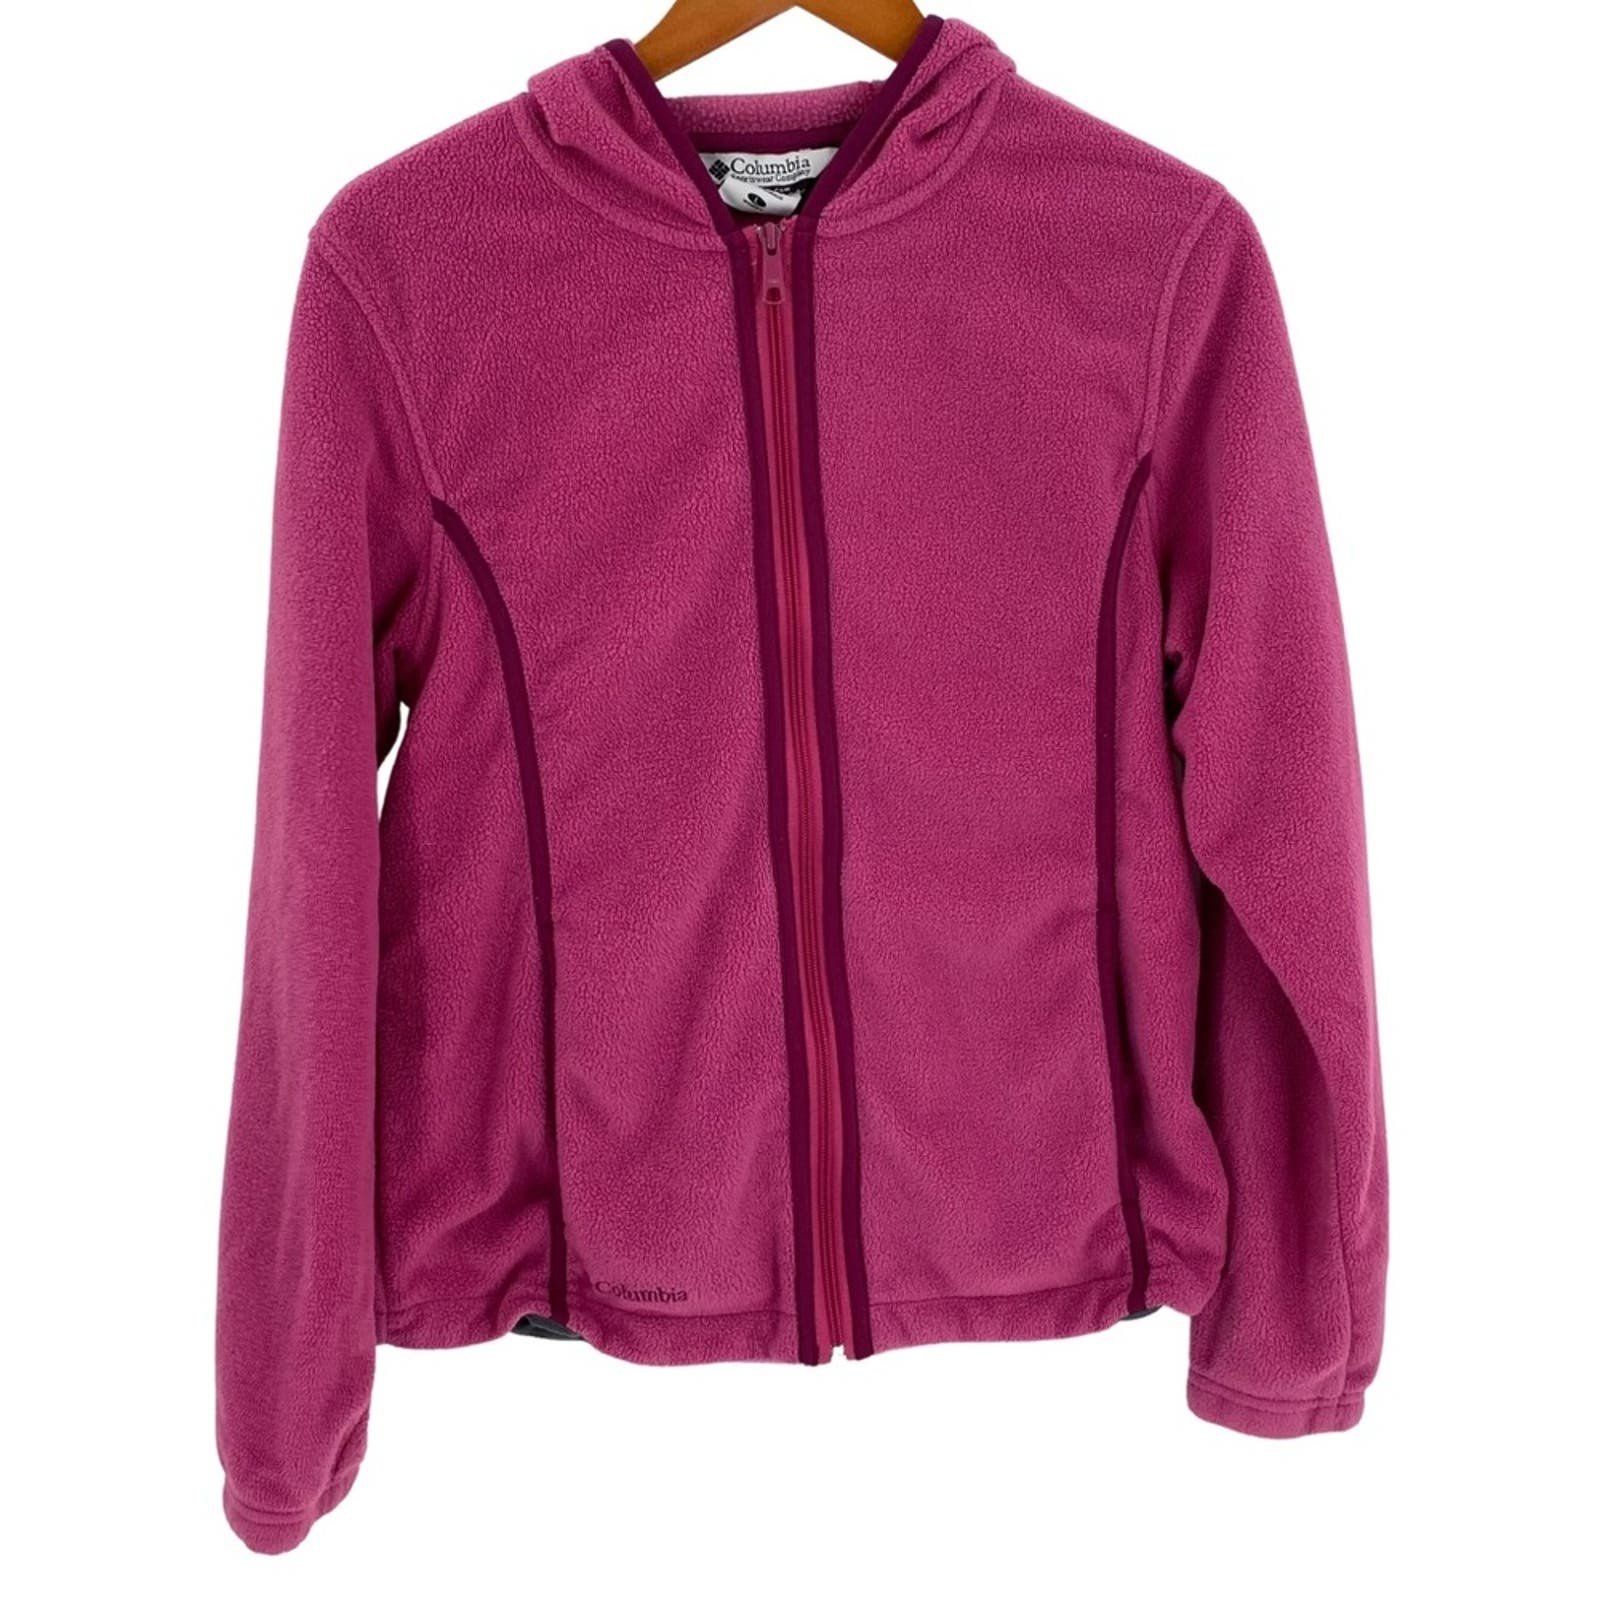 SALE: Berry pink Columbia womens fleece sweatshirt hood